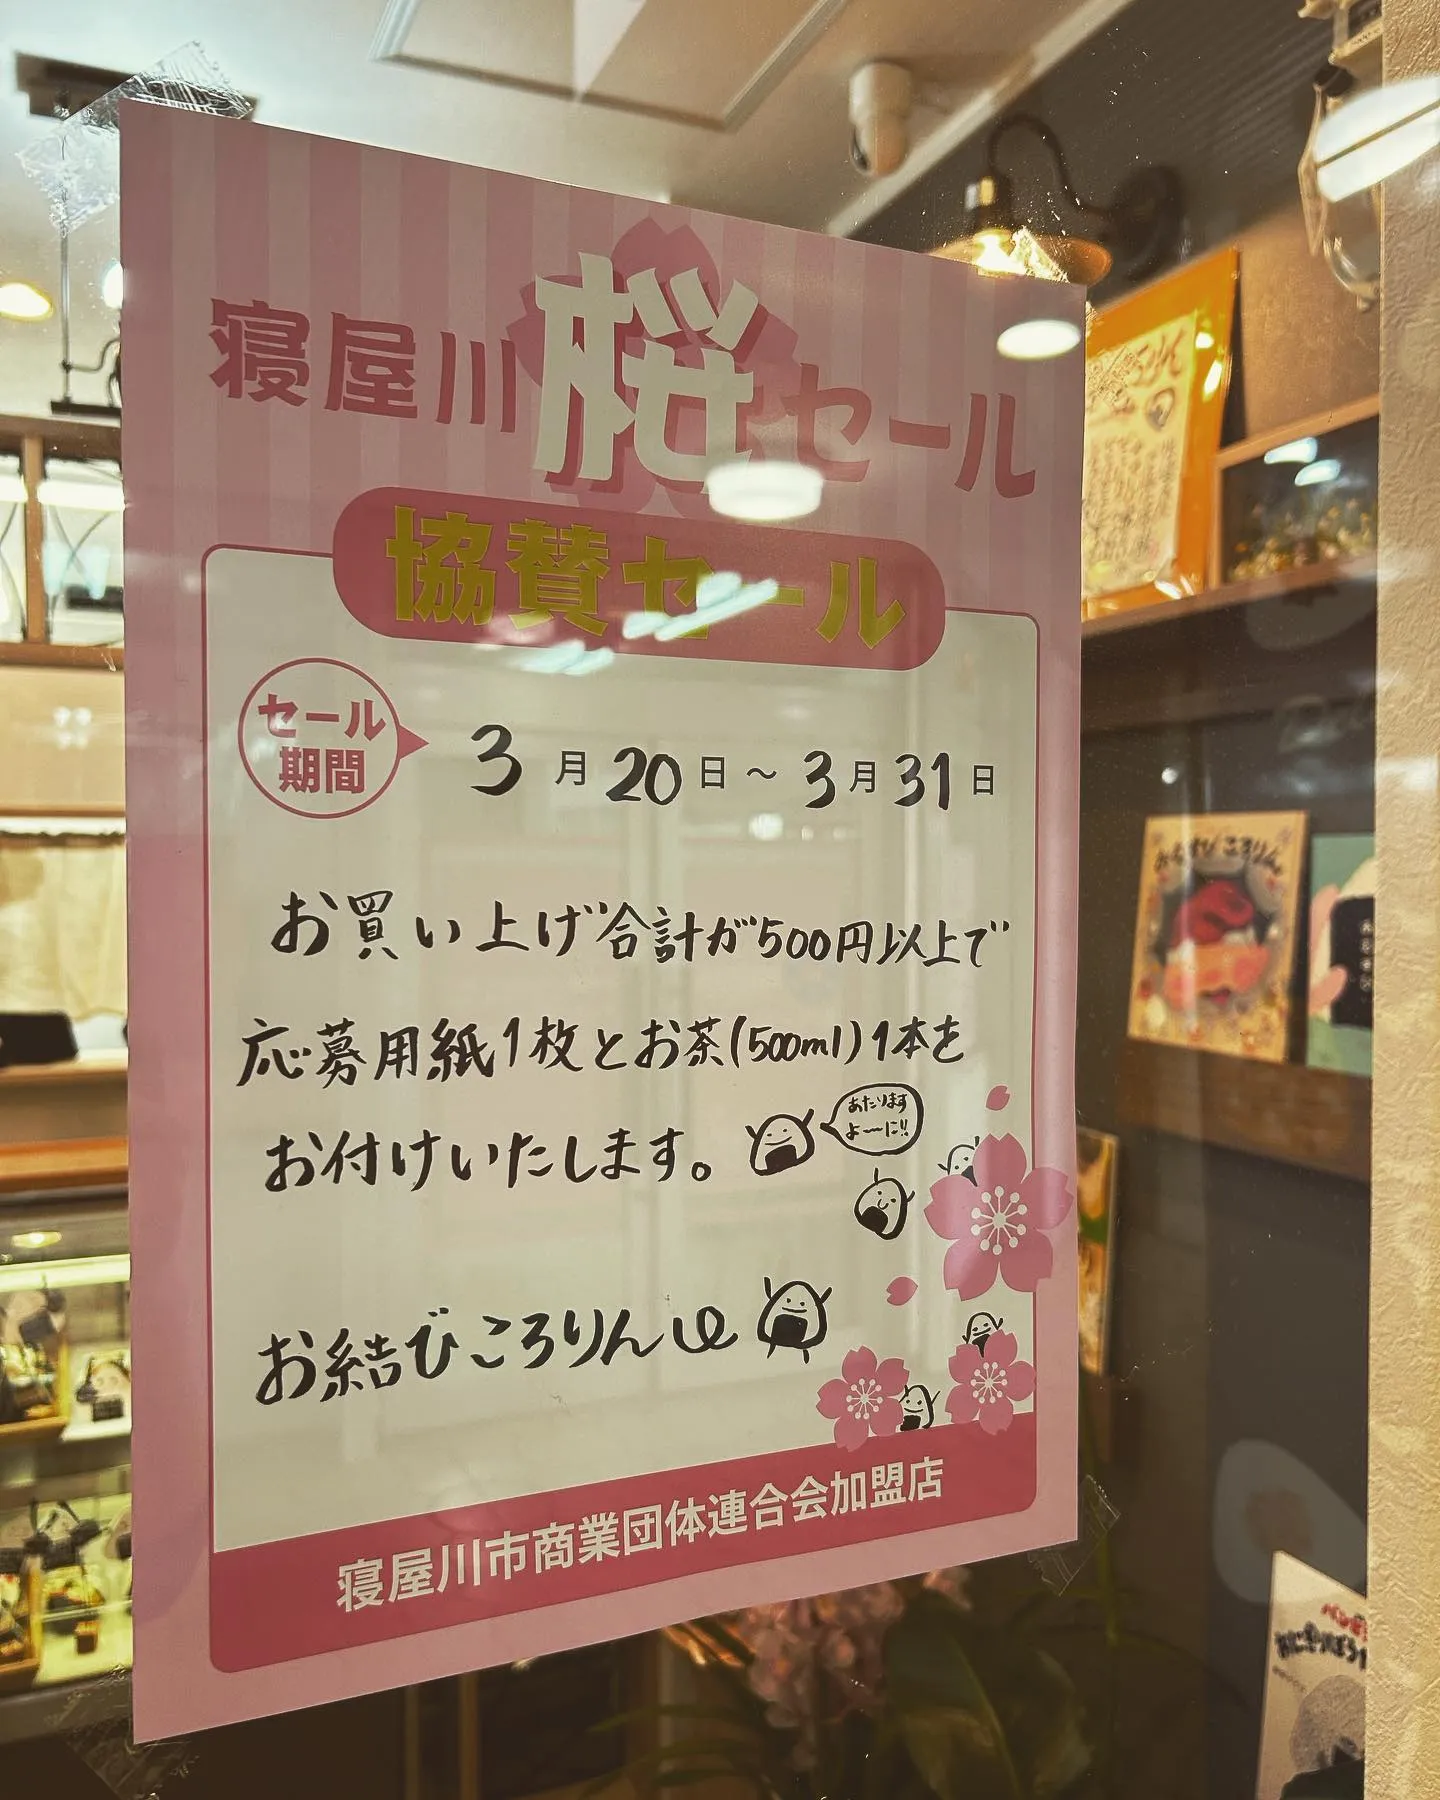 【桜セール】3月20日〜3月31日まで商店街でのセールが始まり...